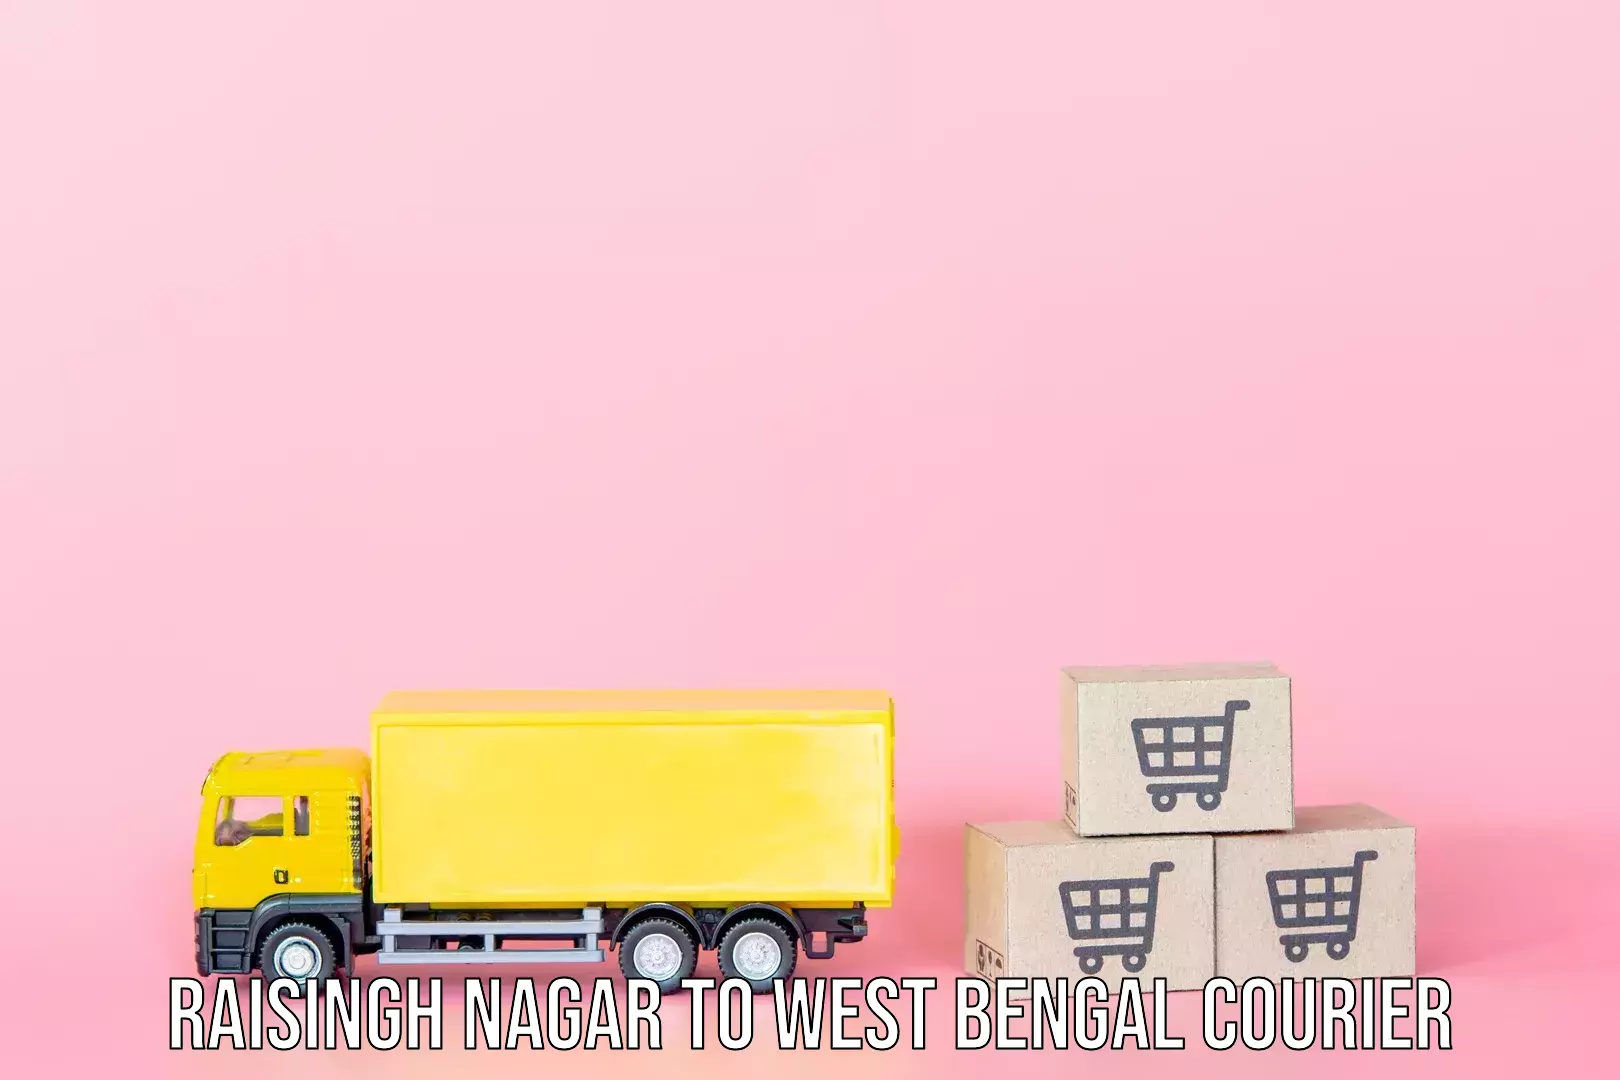 Weekend baggage shipping Raisingh Nagar to Serampore